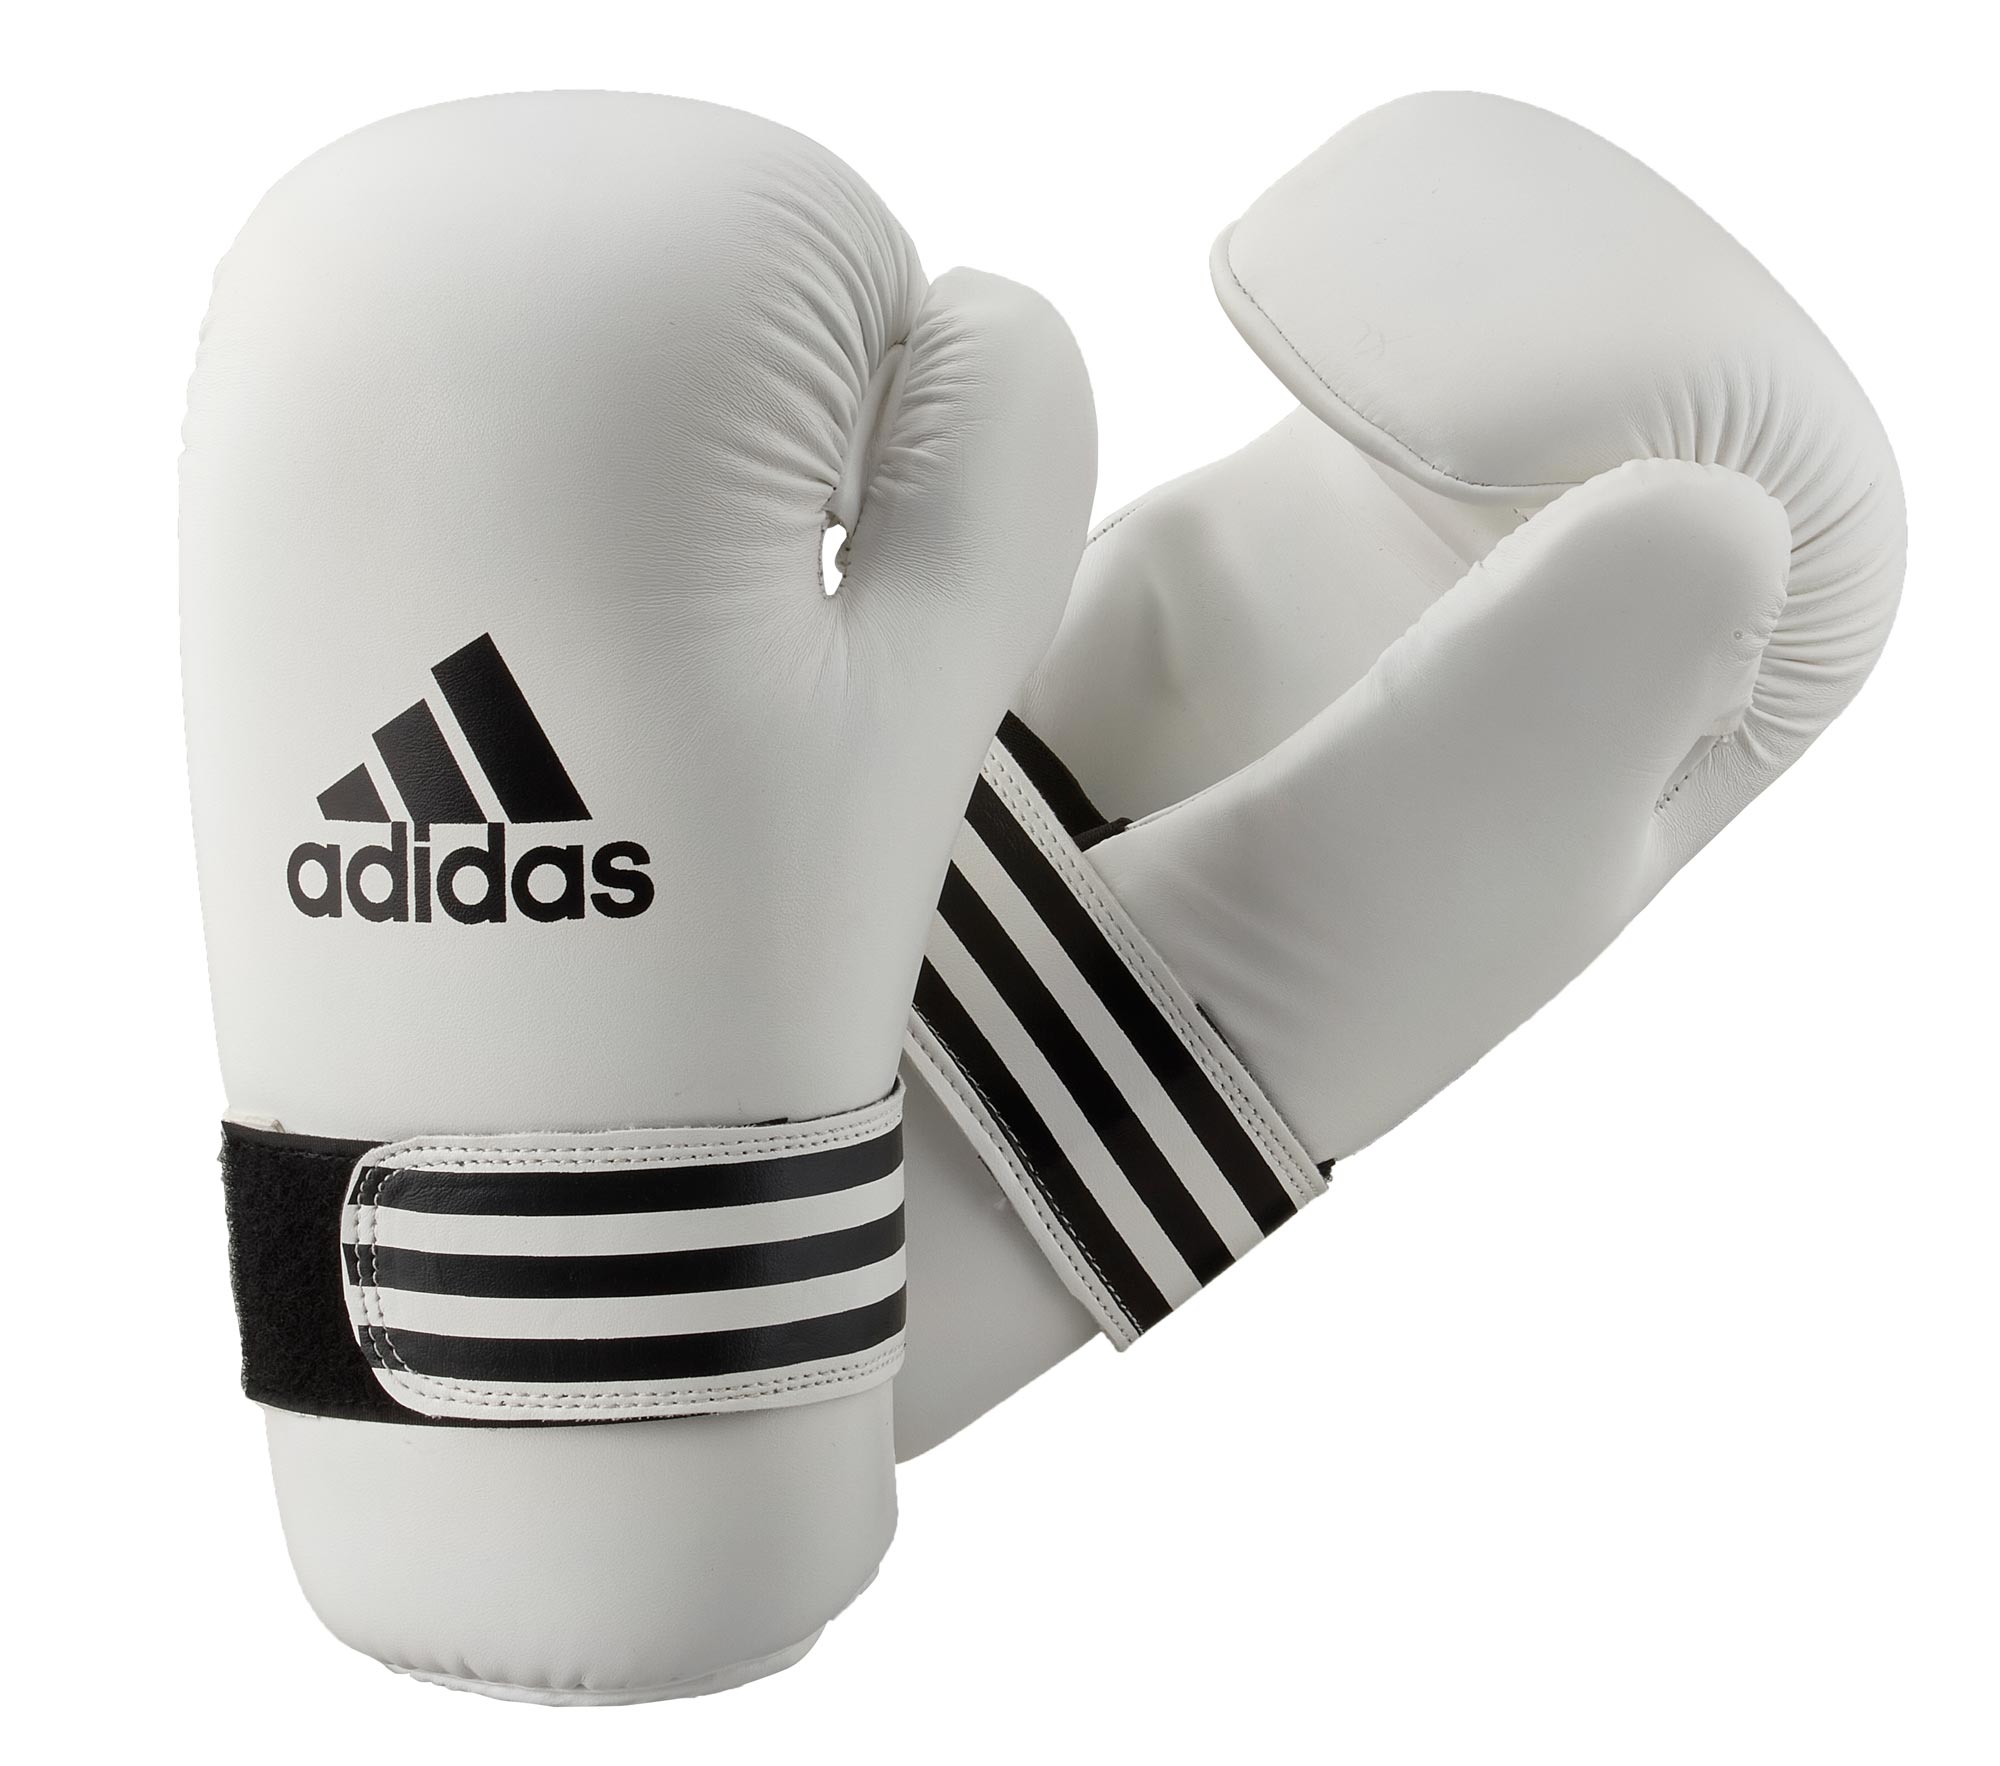 adidas semi contact kick boxing glove ADIBFC01, white/black